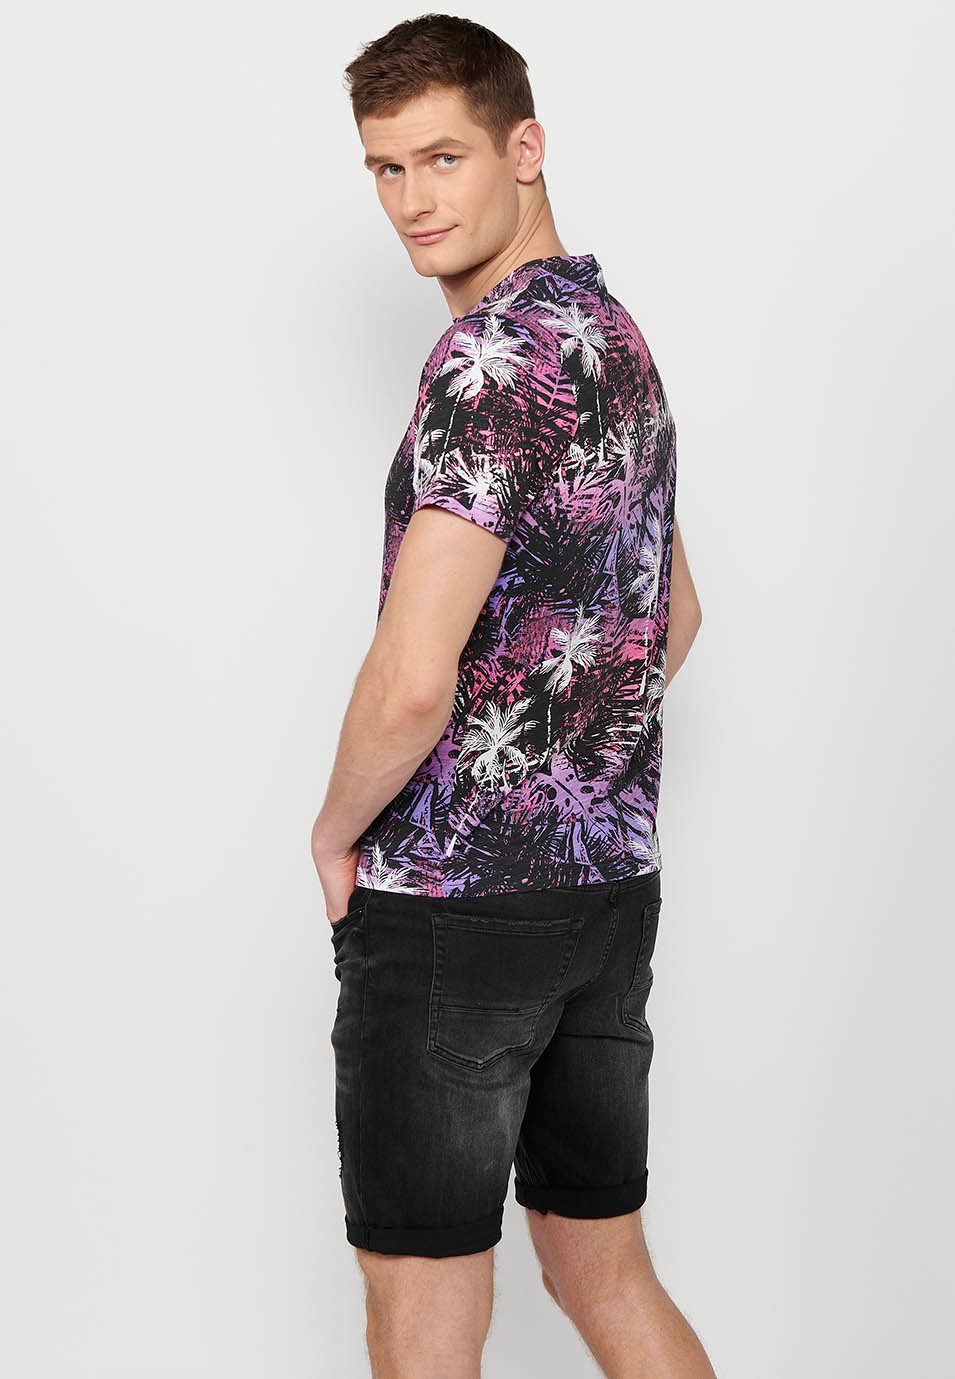 T-shirt manches courtes en coton imprimé tropical multicolore rose-violet pour homme